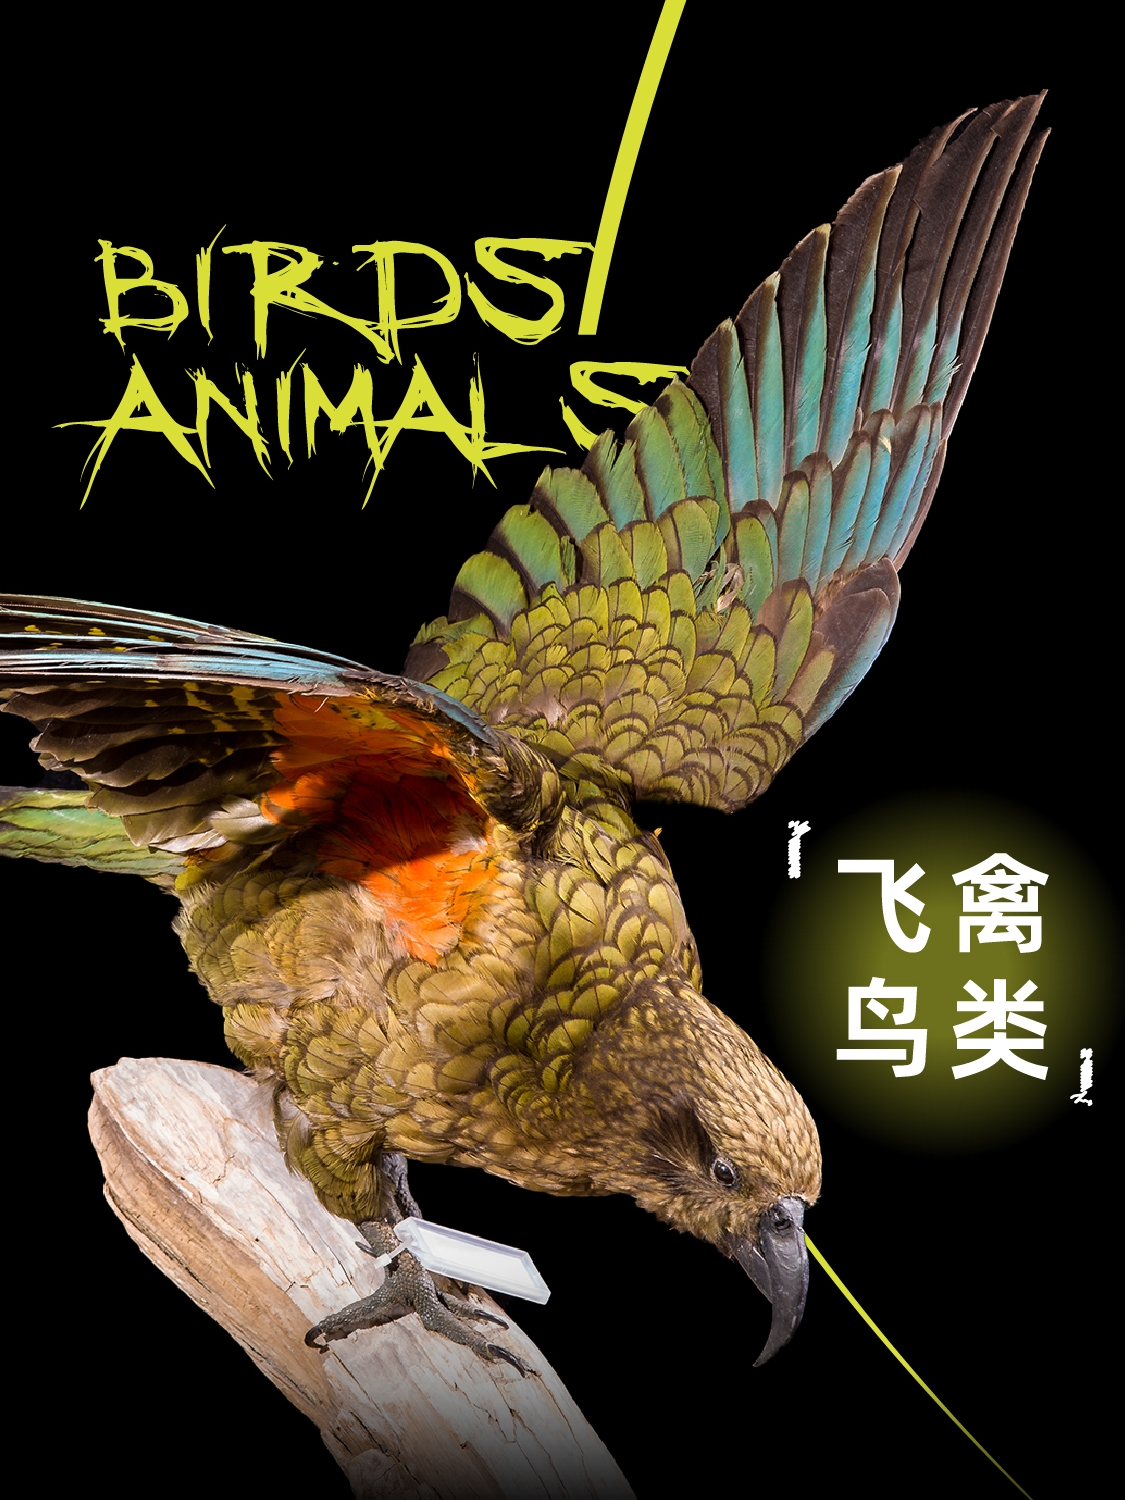 【北京站】《你好！神奇动物》珍稀动物生态展